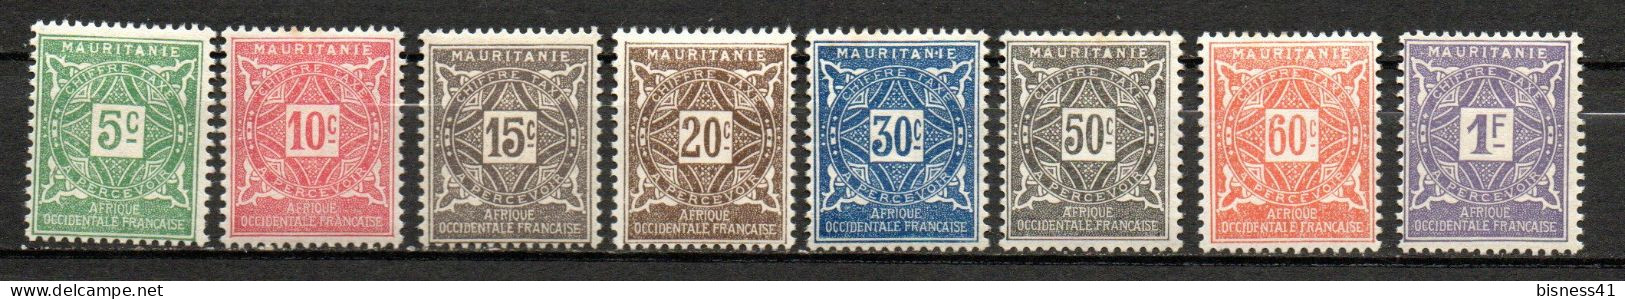 Col33  Colonie Mauritanie Taxe N° 17 à 24 Neuf X MH  Cote : 9,25€ - Oblitérés